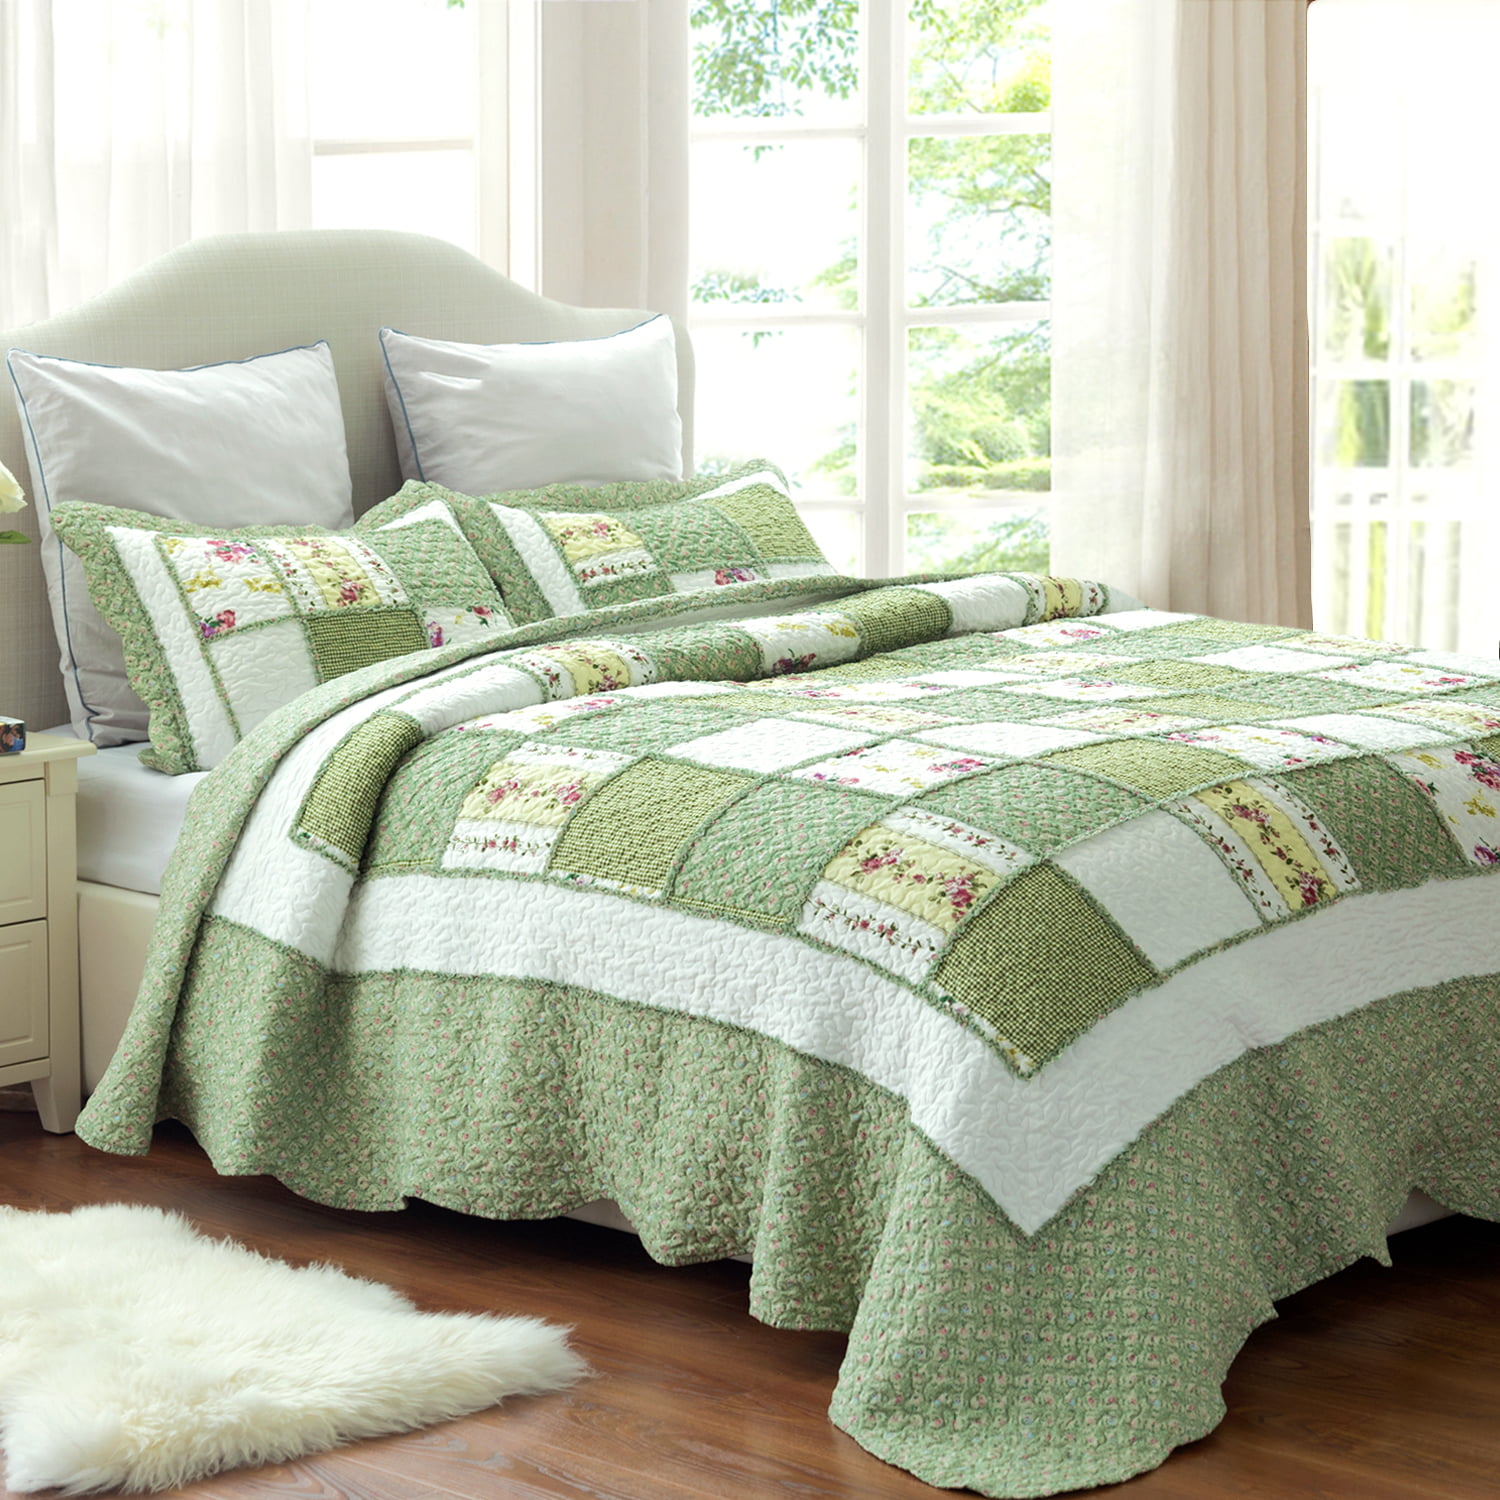 Details about   3-Piece Lightweight Stripe Quilt/Bedspread & Sham Bedding Set Green & Brown 